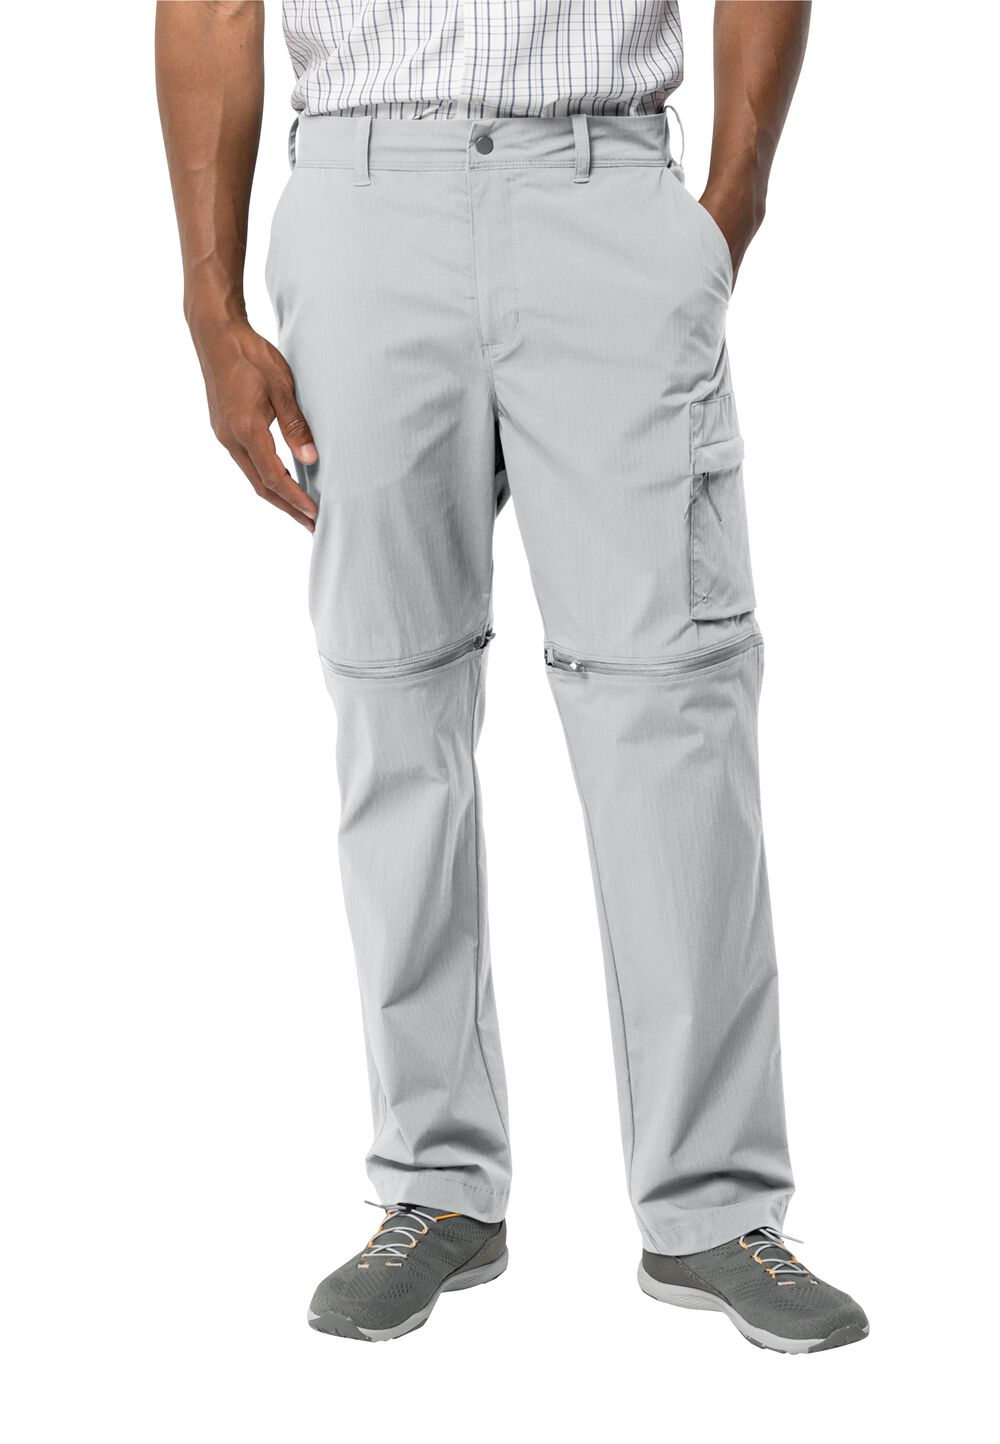 Jack Wolfskin Wanderthirst Zip Pants Men Zip-Off-broek Heren 50L grijs cool grey